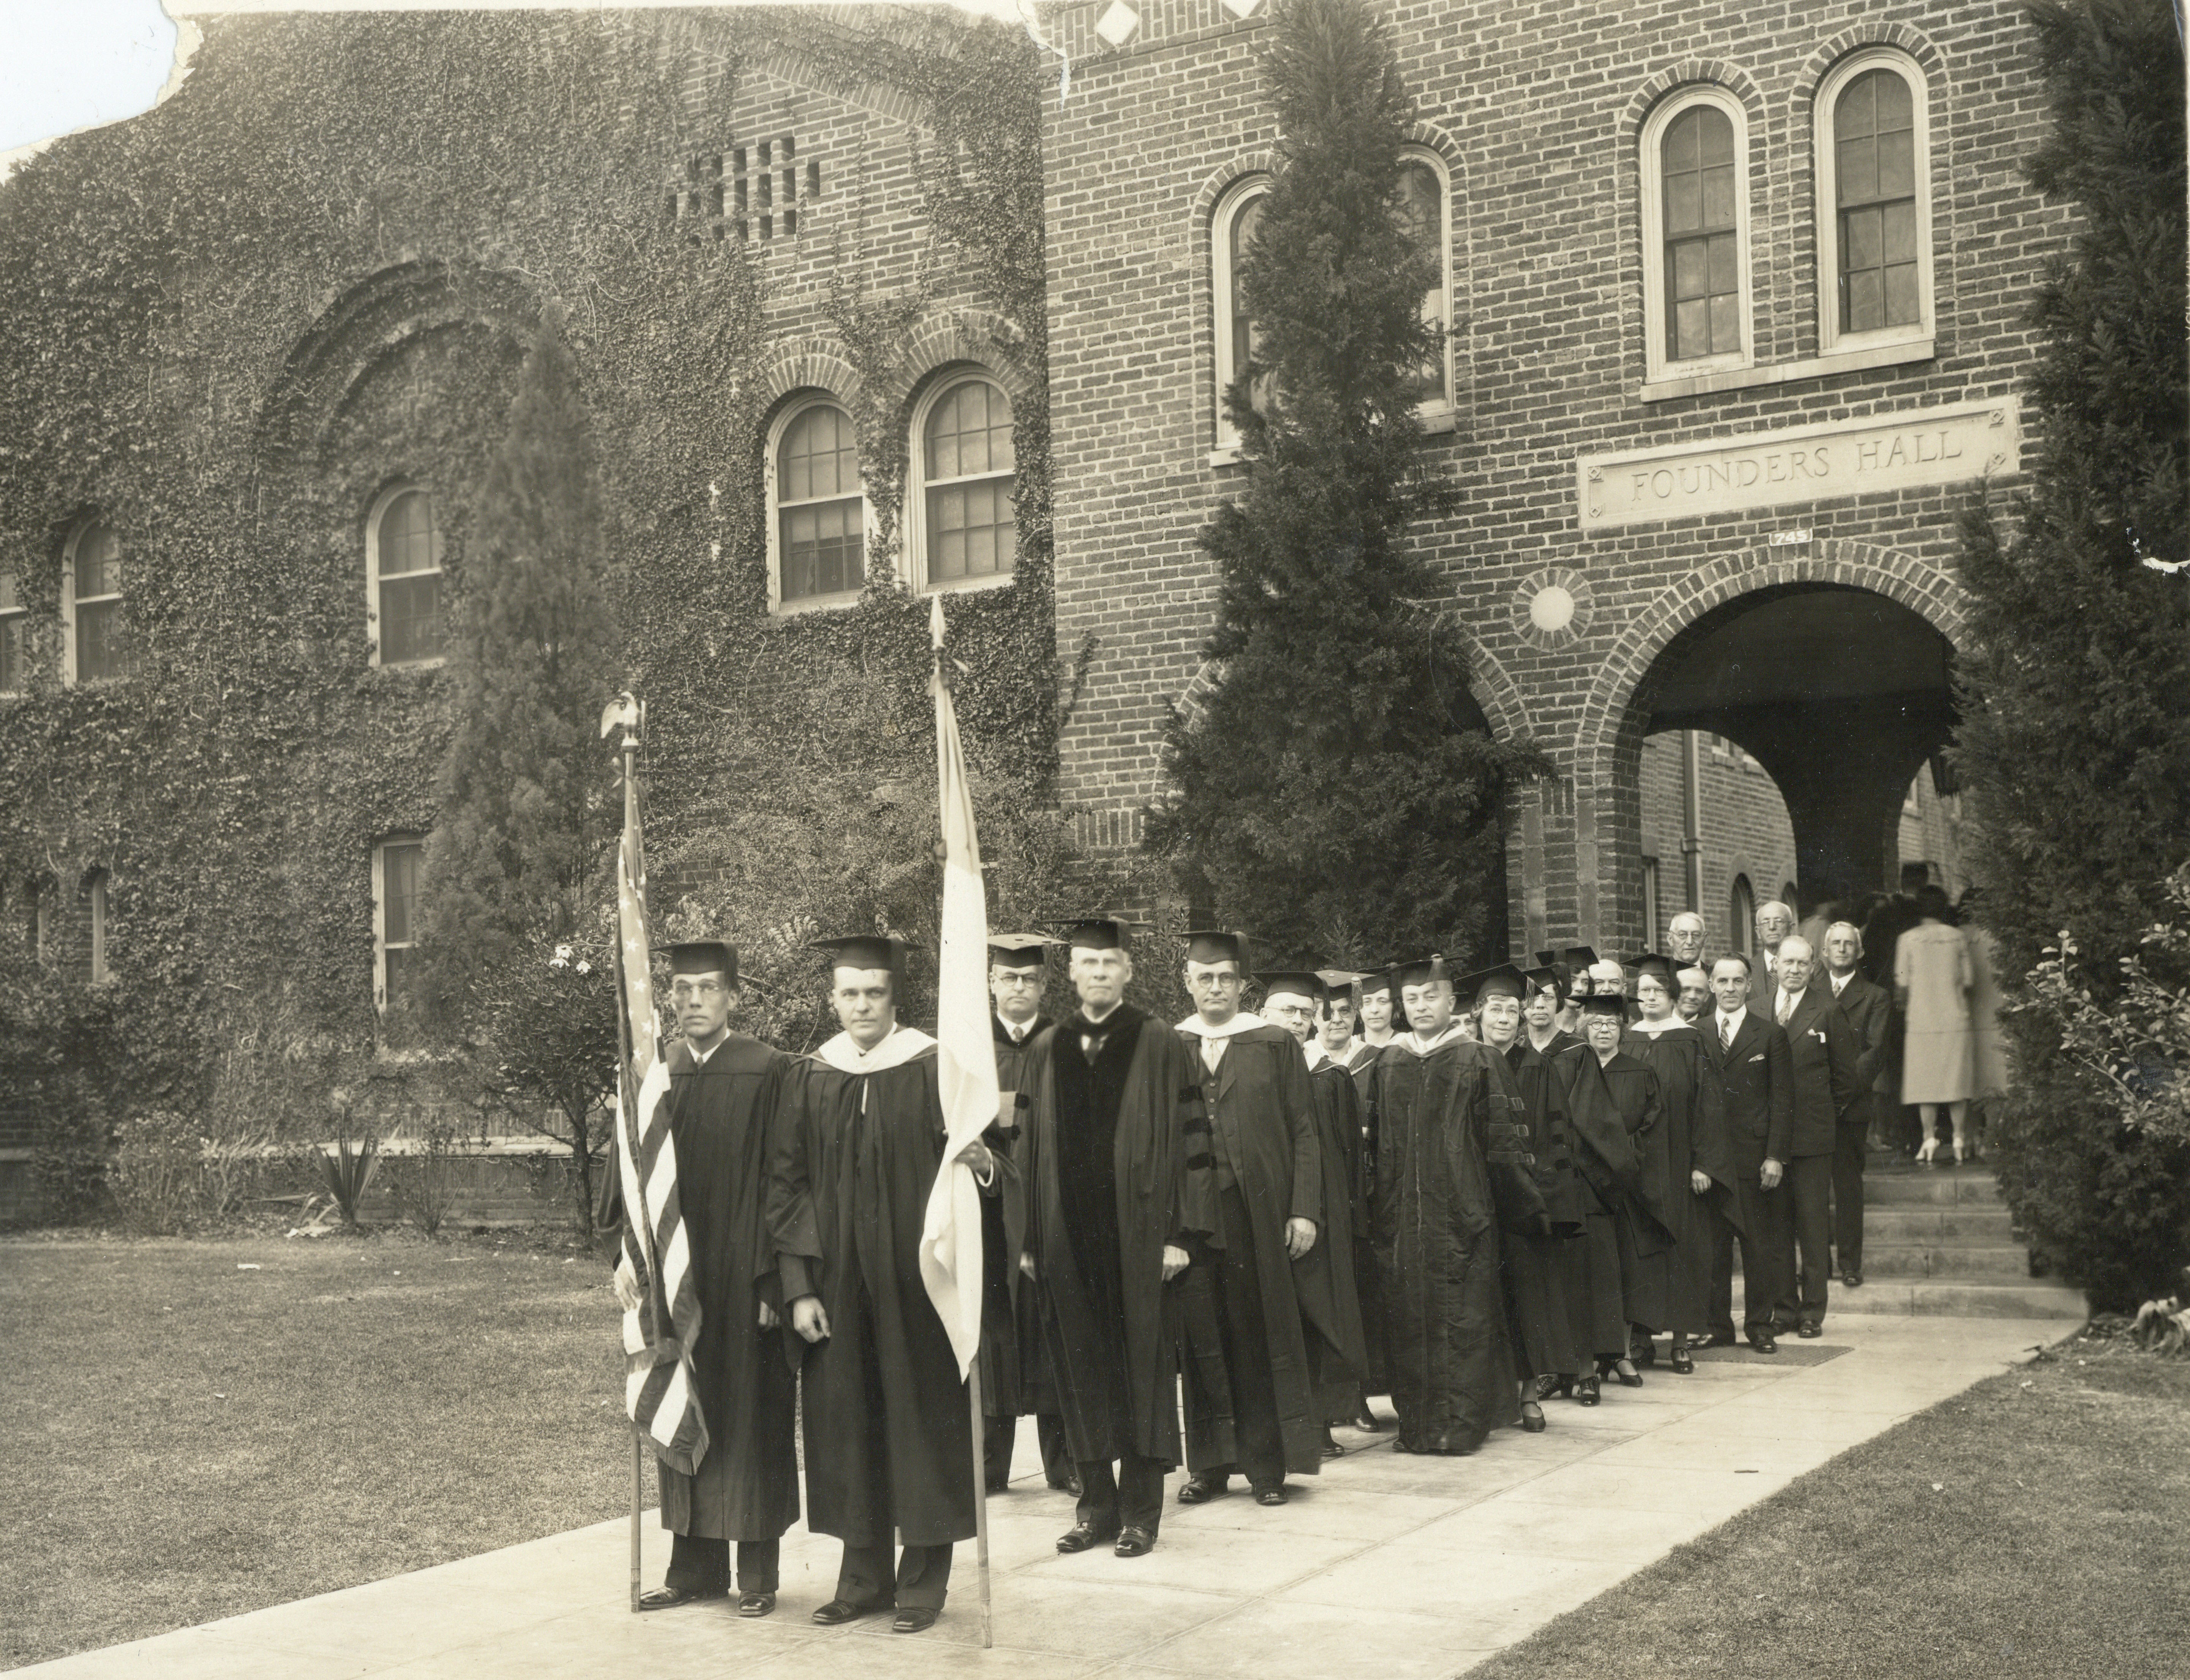 1930 graduation at Chapman